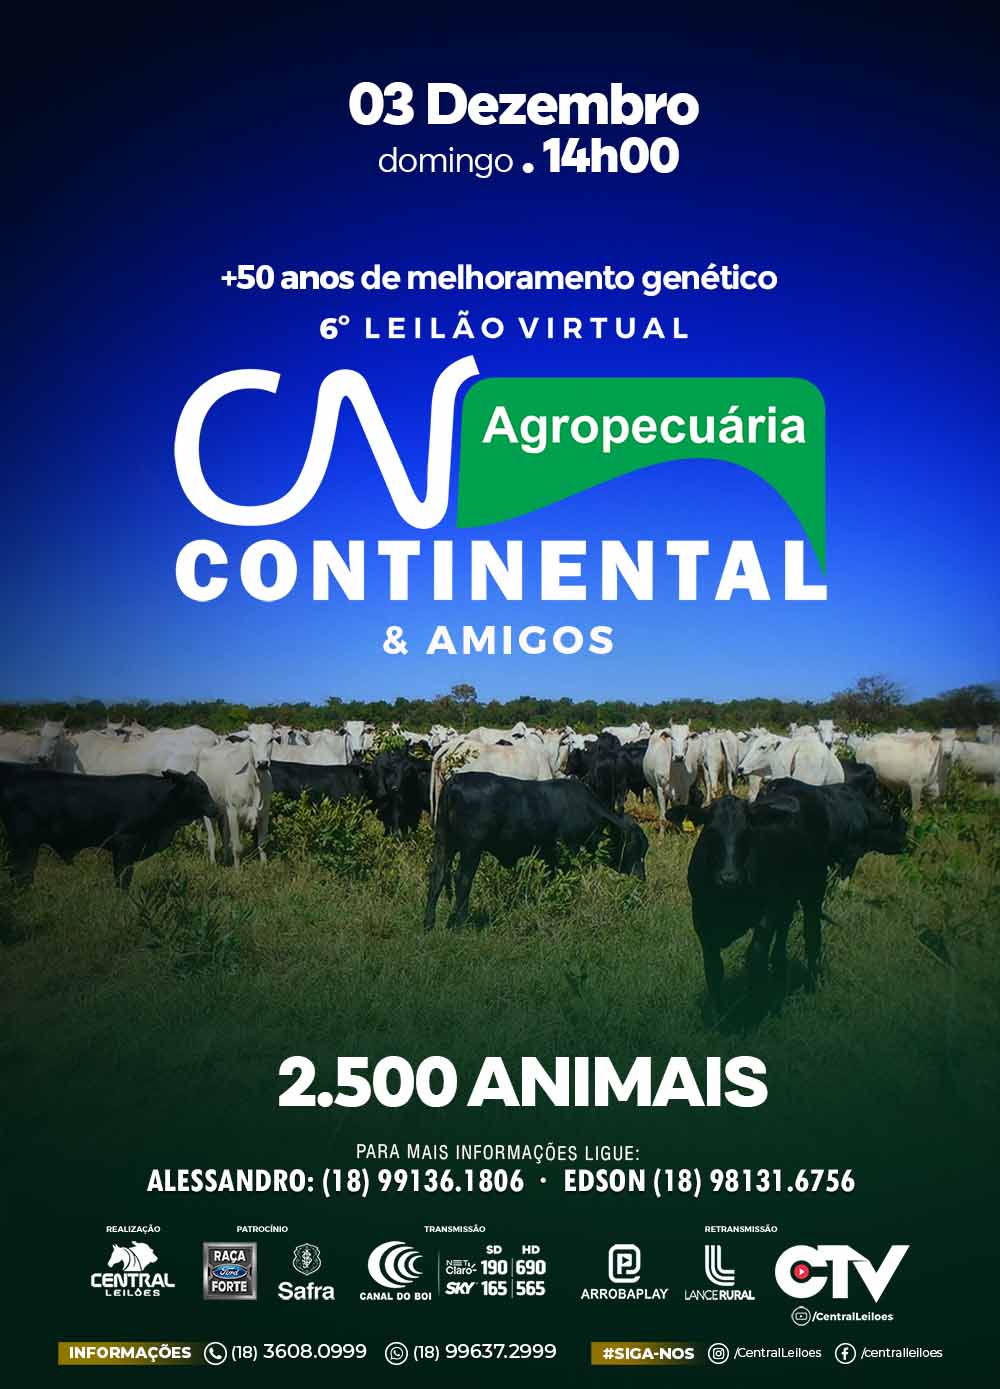 6º LEILÃO VIRTUAL AGROPECUÁRIA CONTINENTAL & AMIGOS